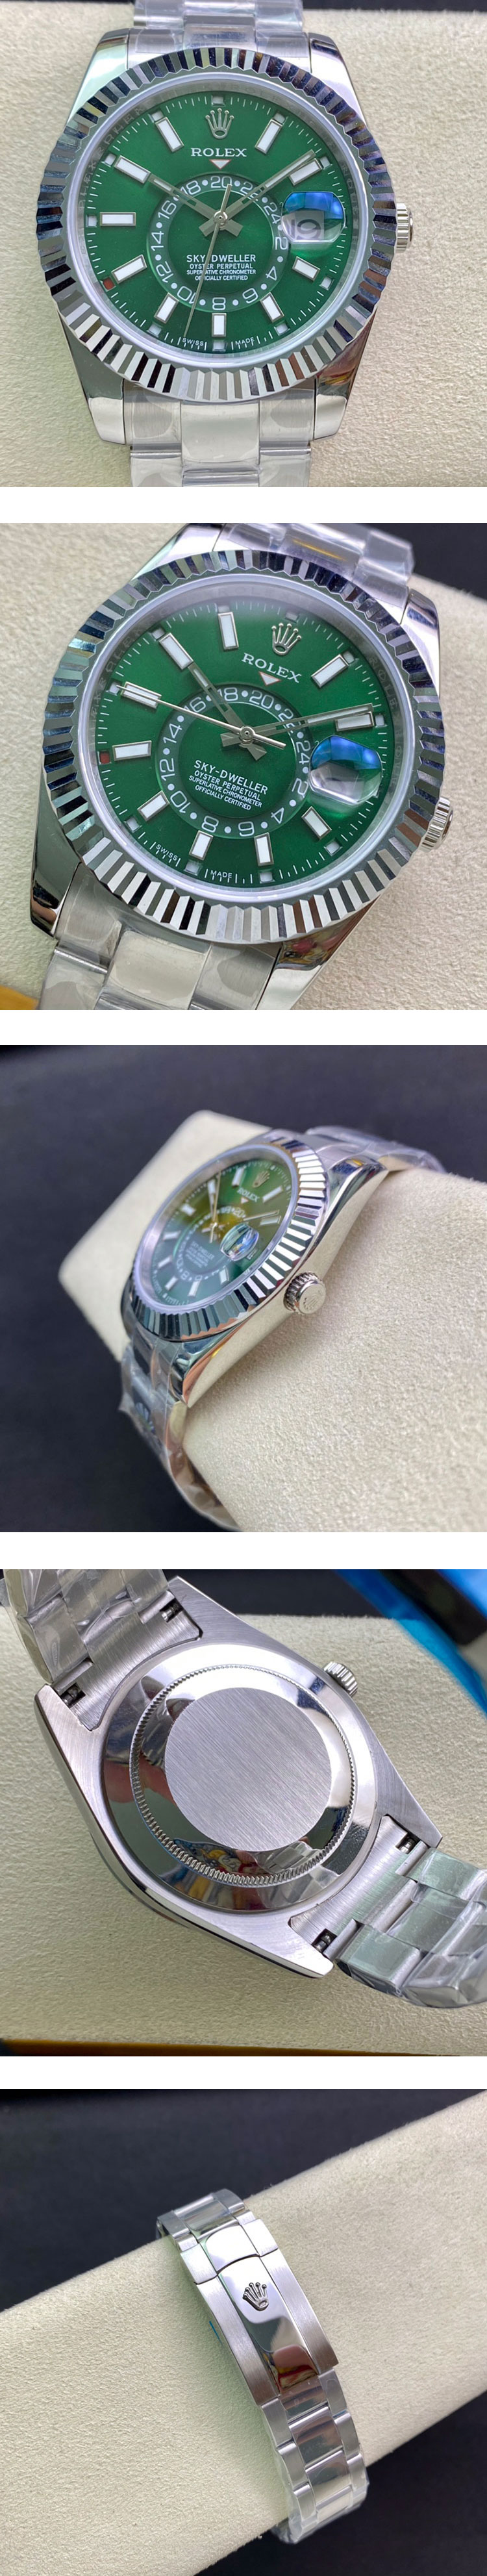 素敵な腕時計 最高級ロレックスコピー 336934 スカイドゥエラー42mm グリーン 安心購入